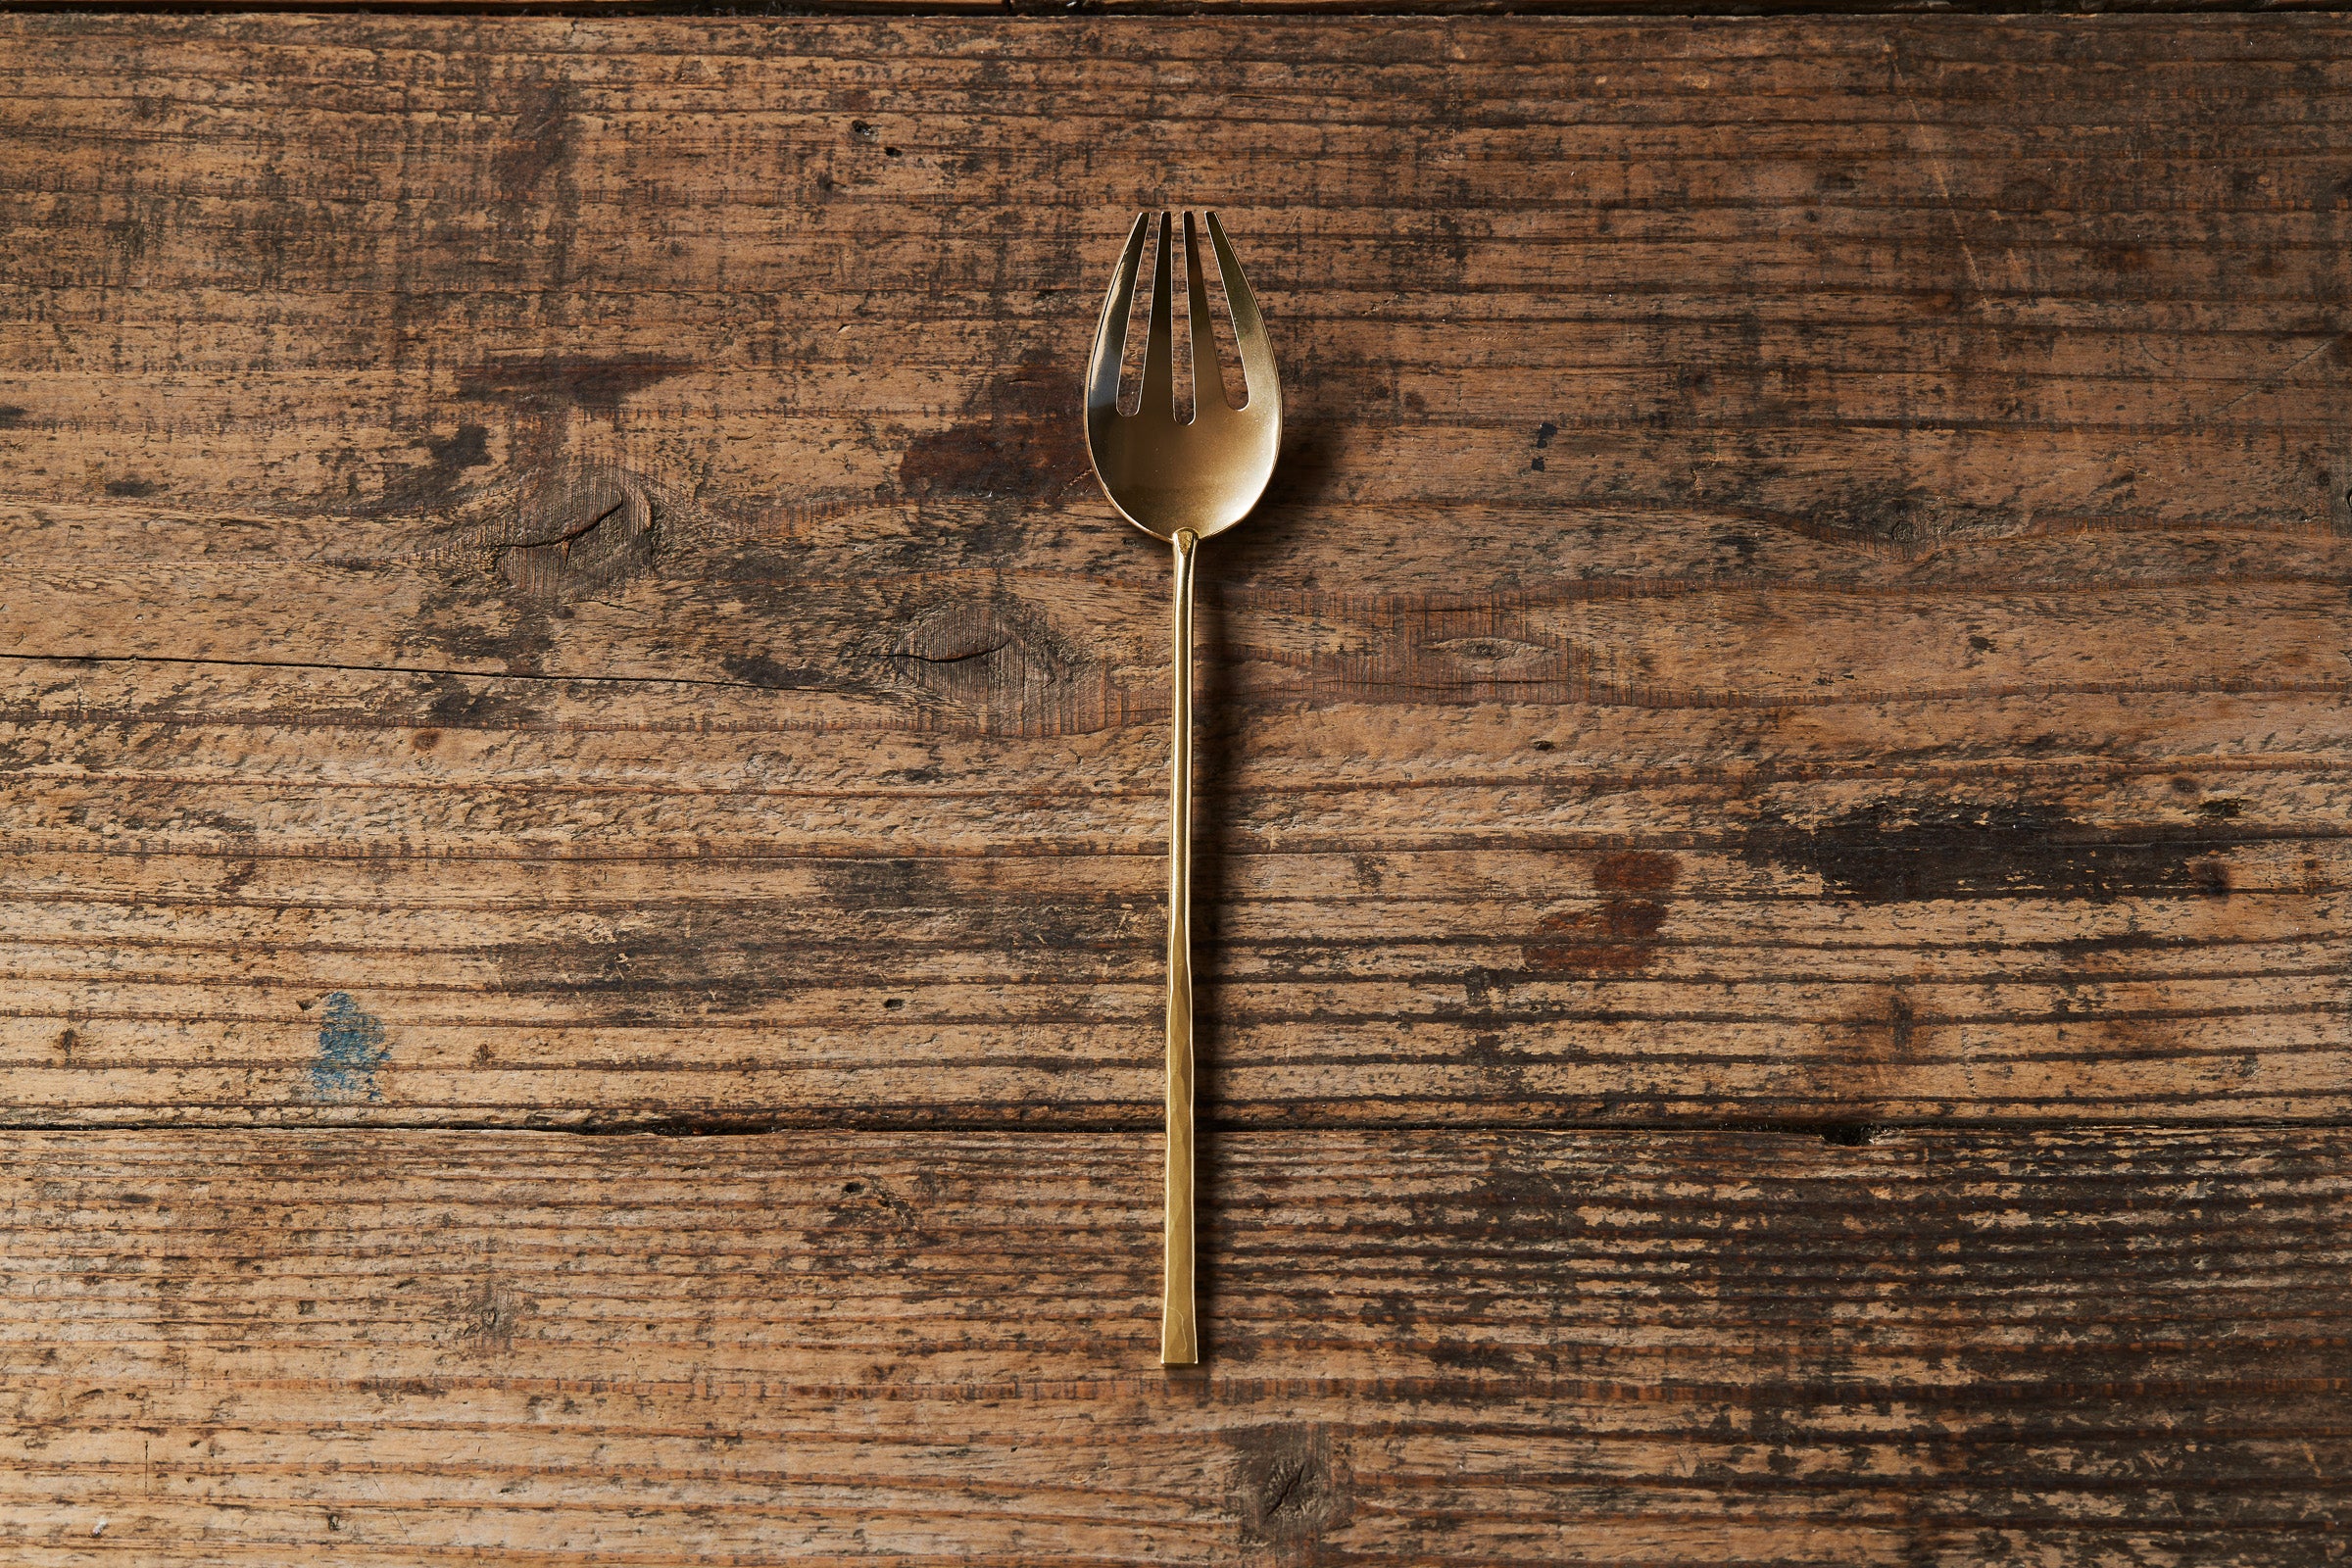 LUE｜#015 Dinner Fork